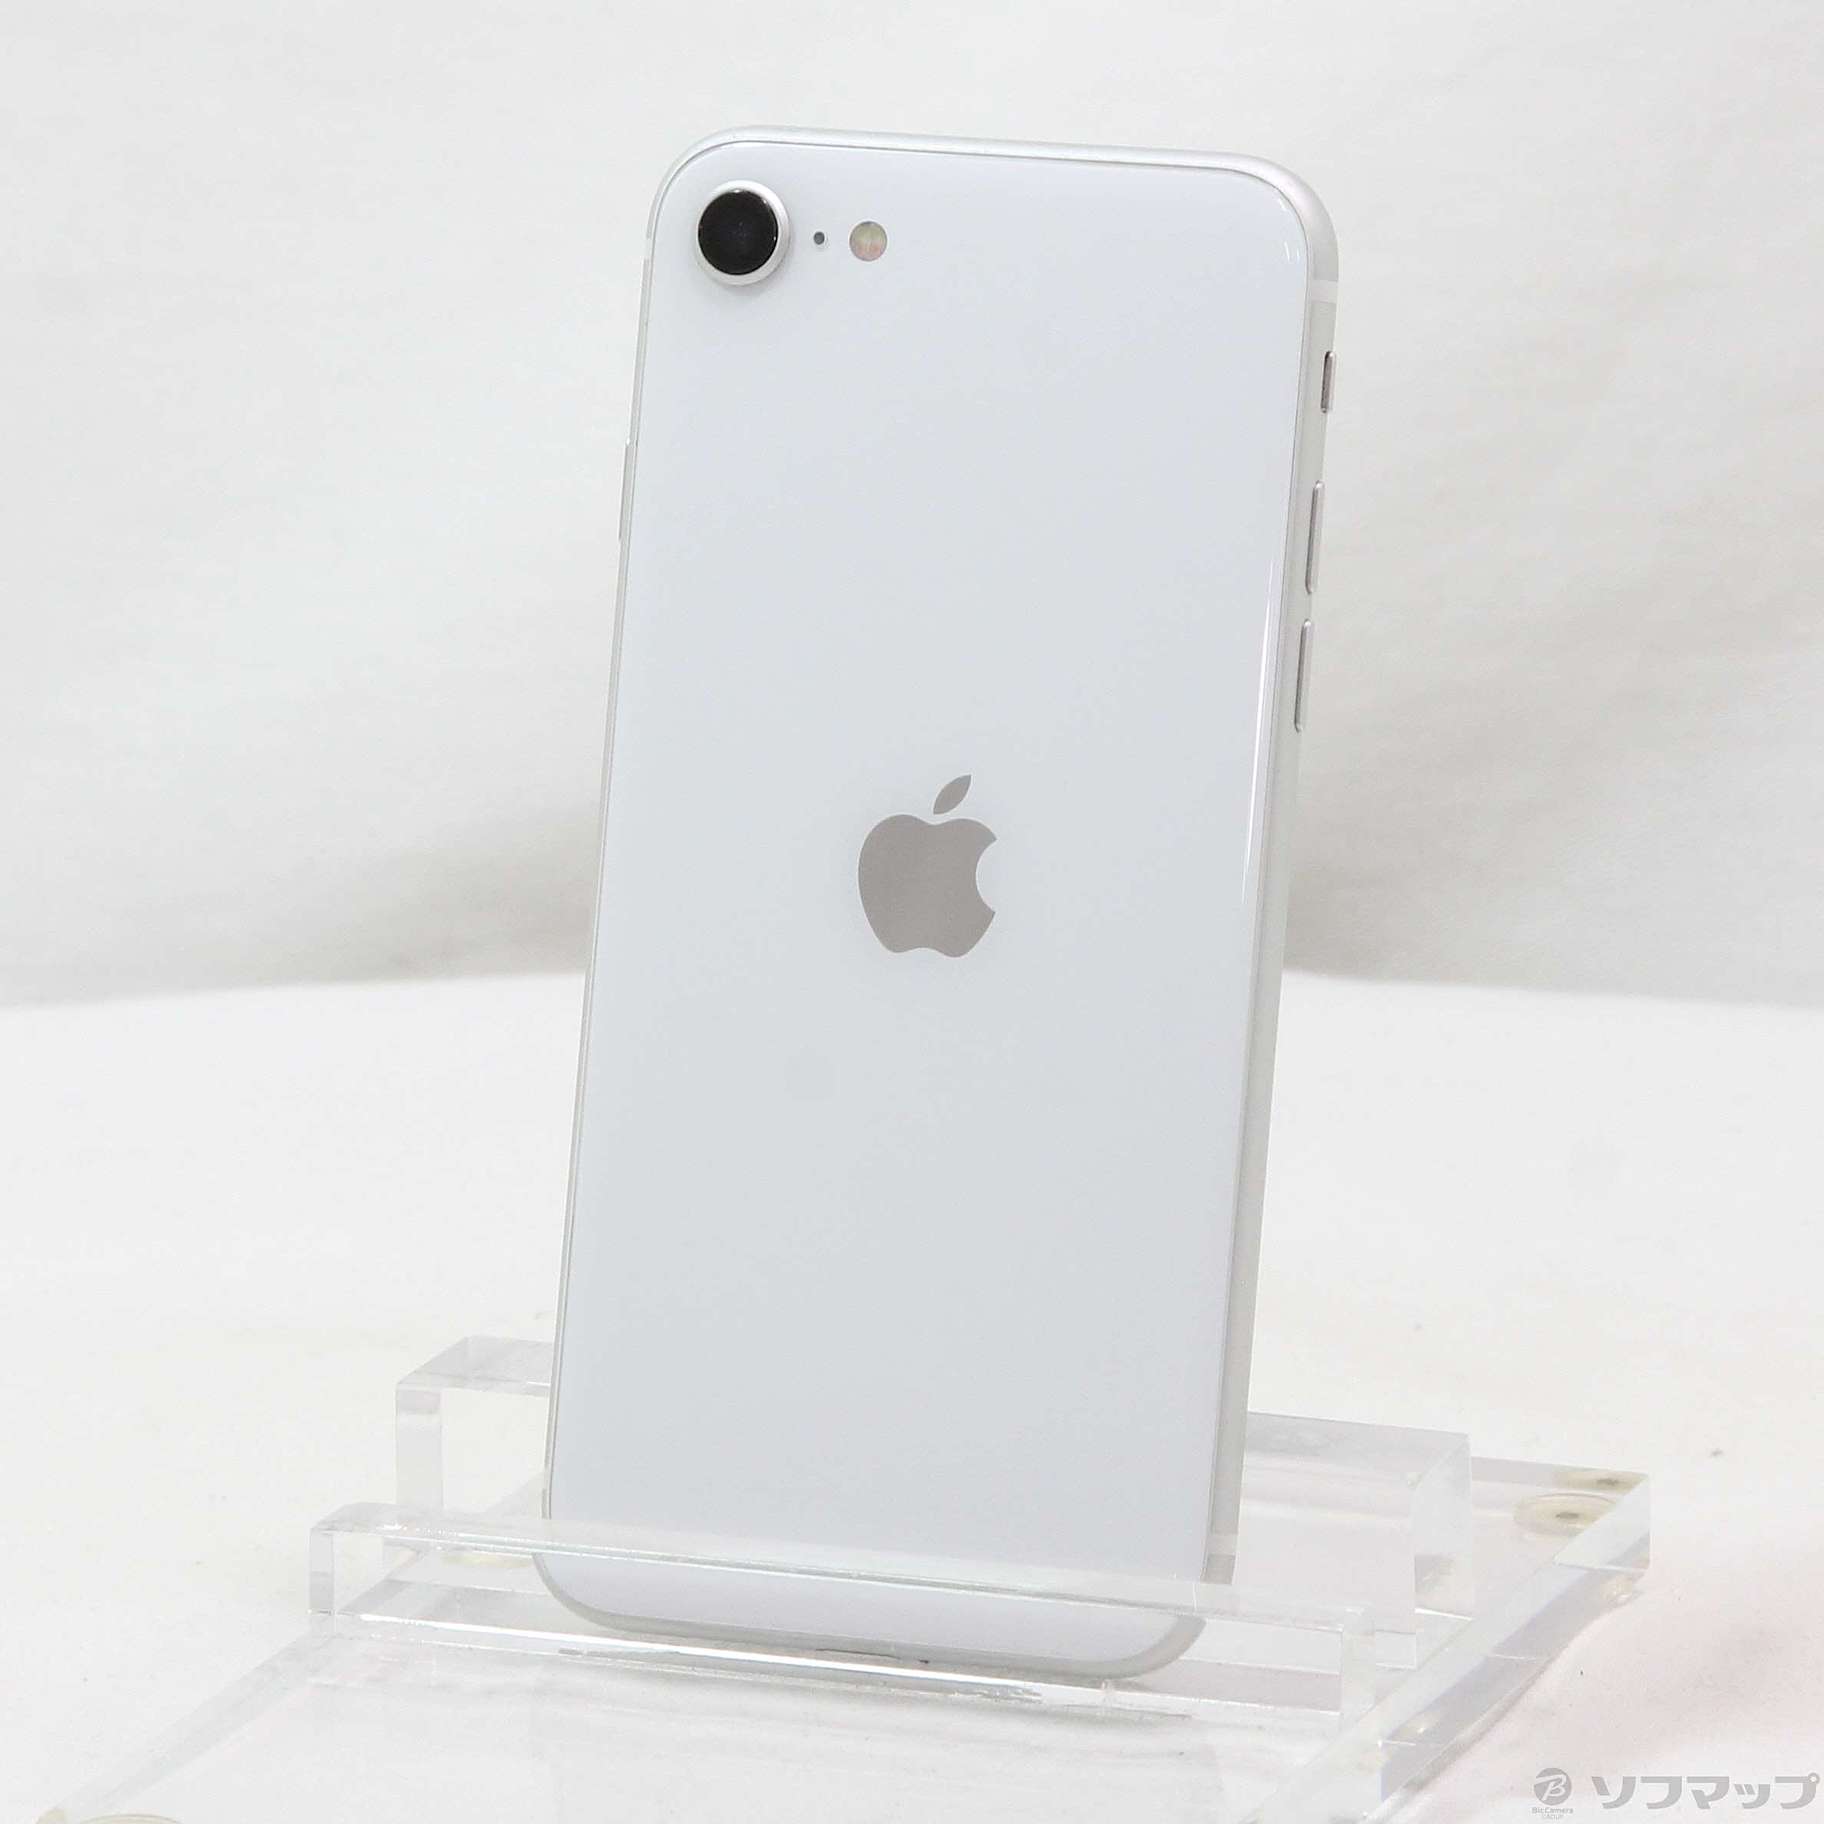 iPhone SE 第2世代 (SE2) ホワイト 256GBカラーホワイト